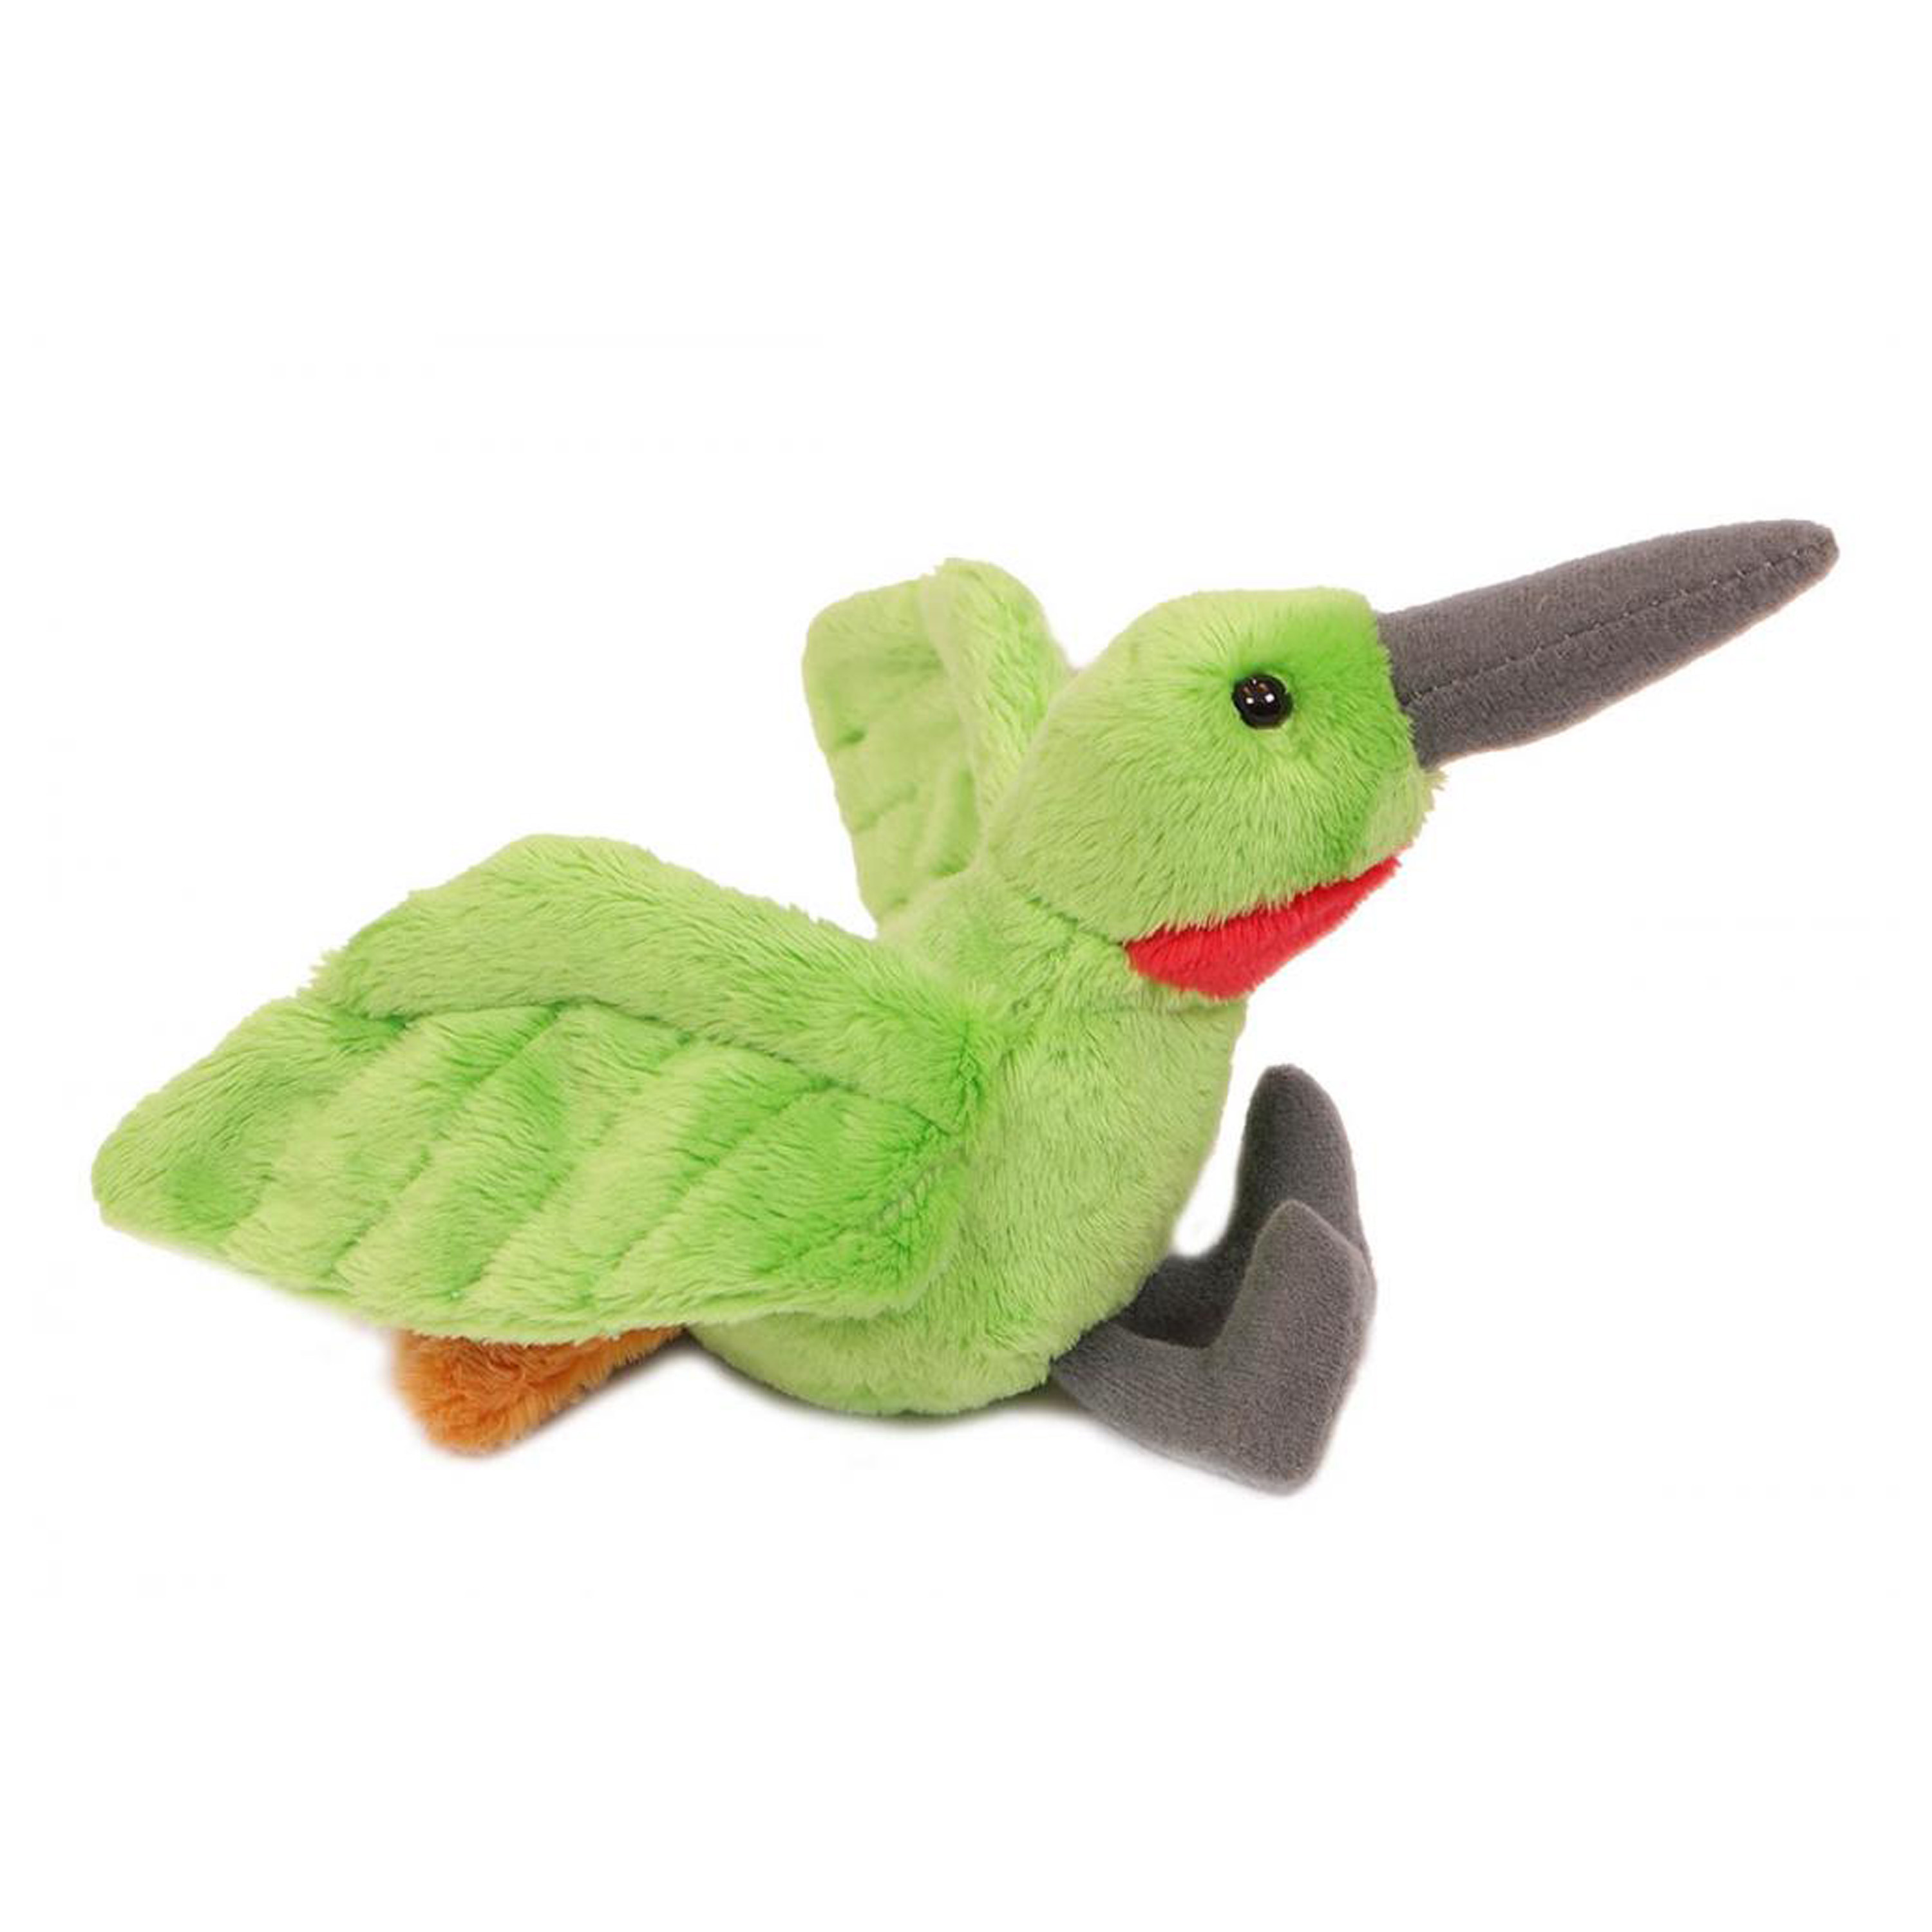 Pia Toys Knuffeldier Kolibri vogel zachte pluche stof lichtgroen kwaliteit knuffels 10 cm